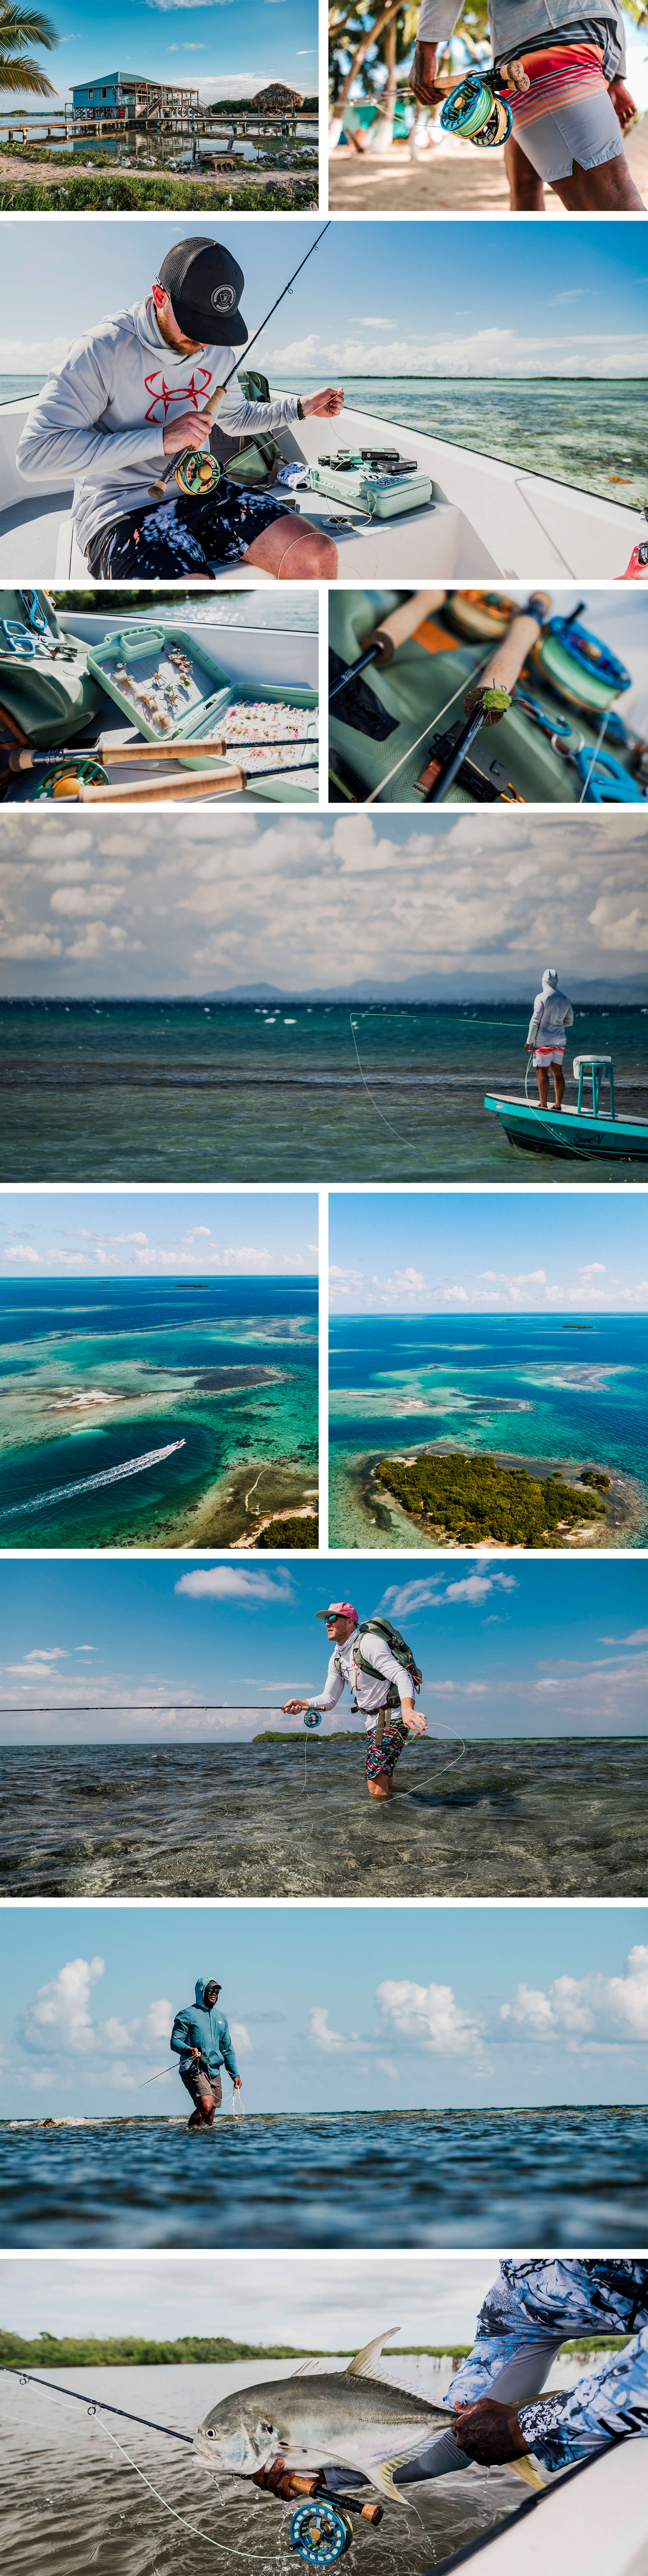 Un collage de imágenes de un viaje de pesca voladora a Belice